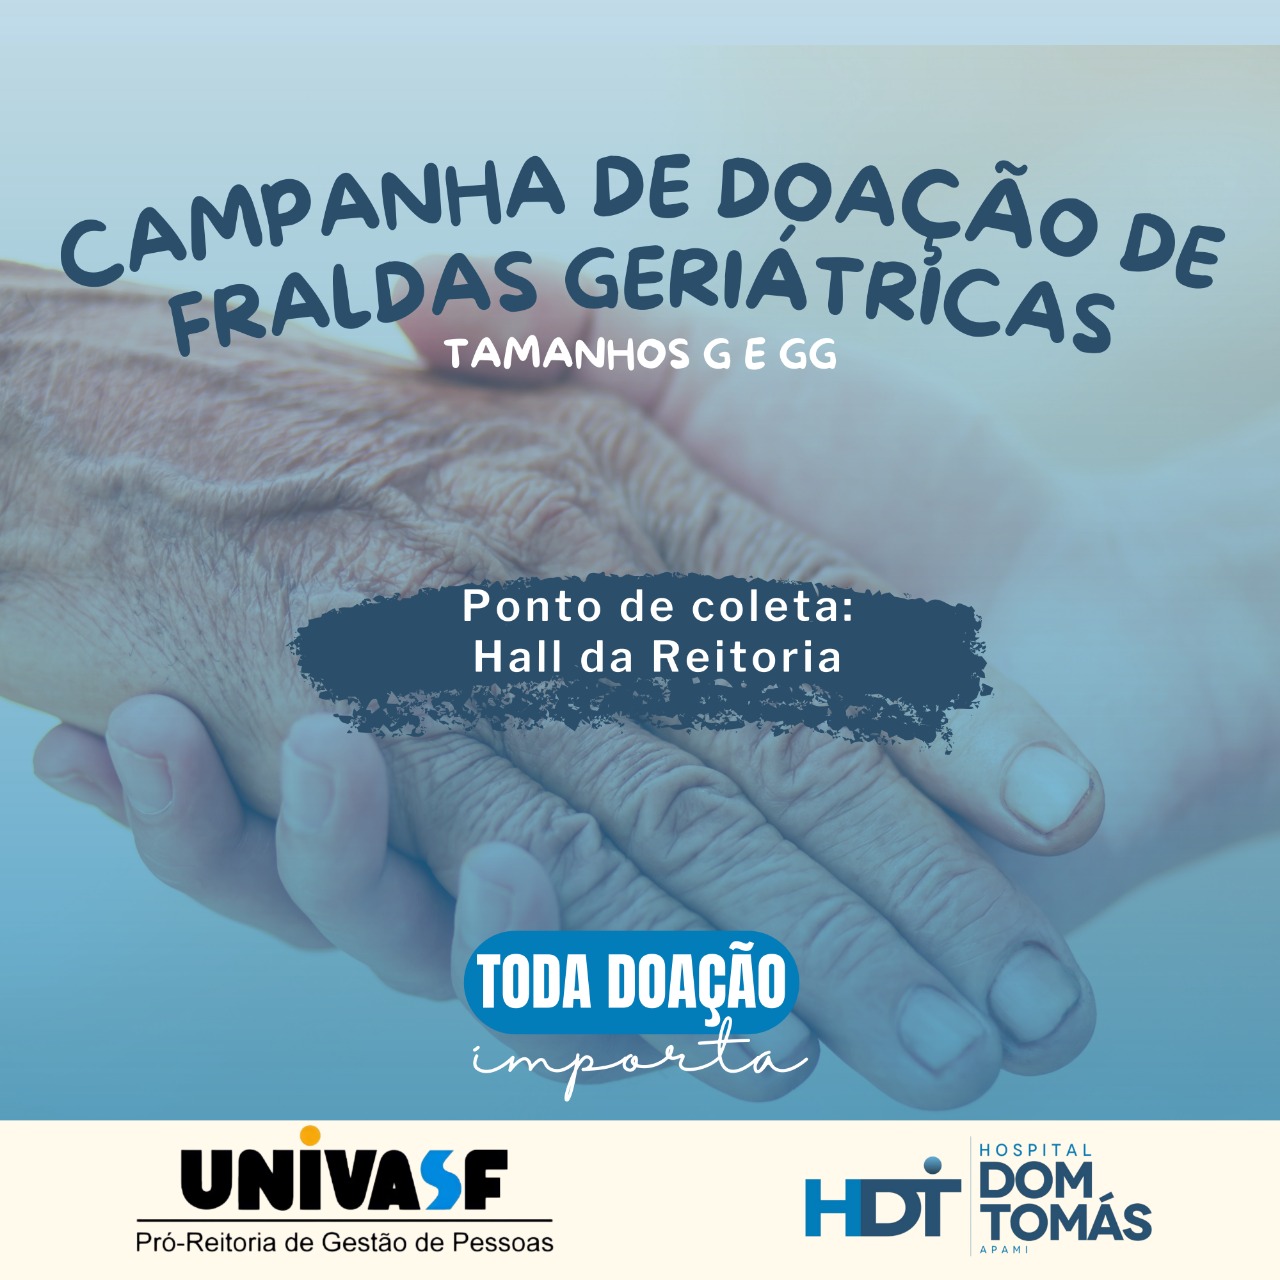 Rede Drogal inaugura 1ª unidade em Taquarituba e faz doação de 5 mil  fraldas geriátricas para Prefeitura - Engenho da Notícia